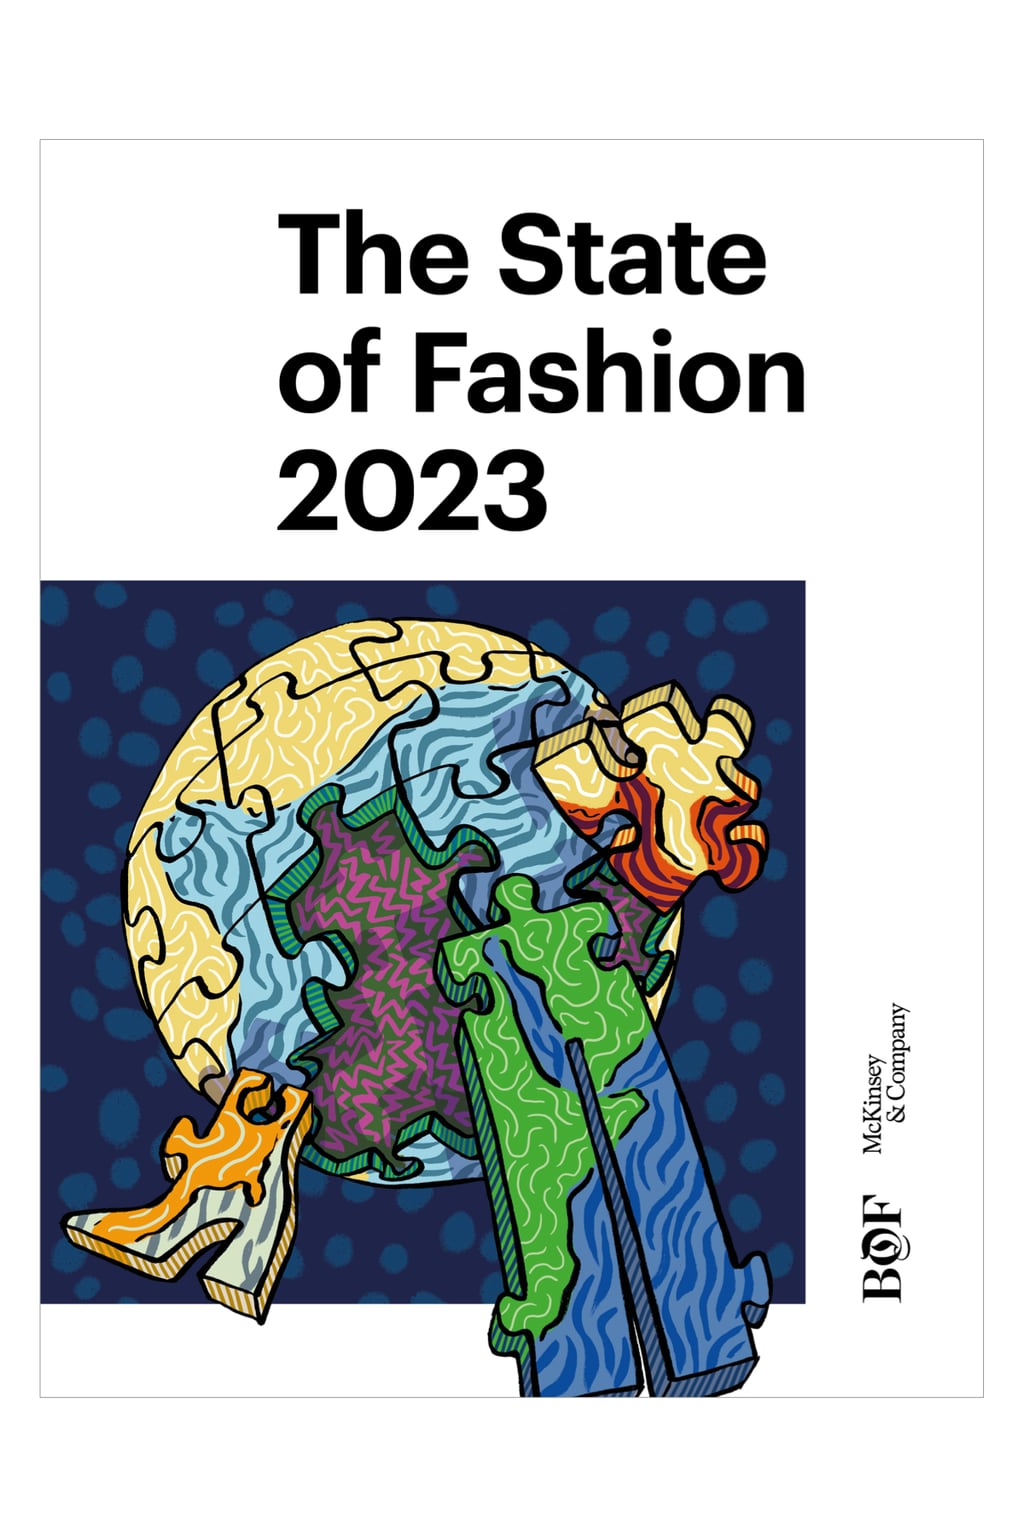 《2023年时尚状况》封面重点